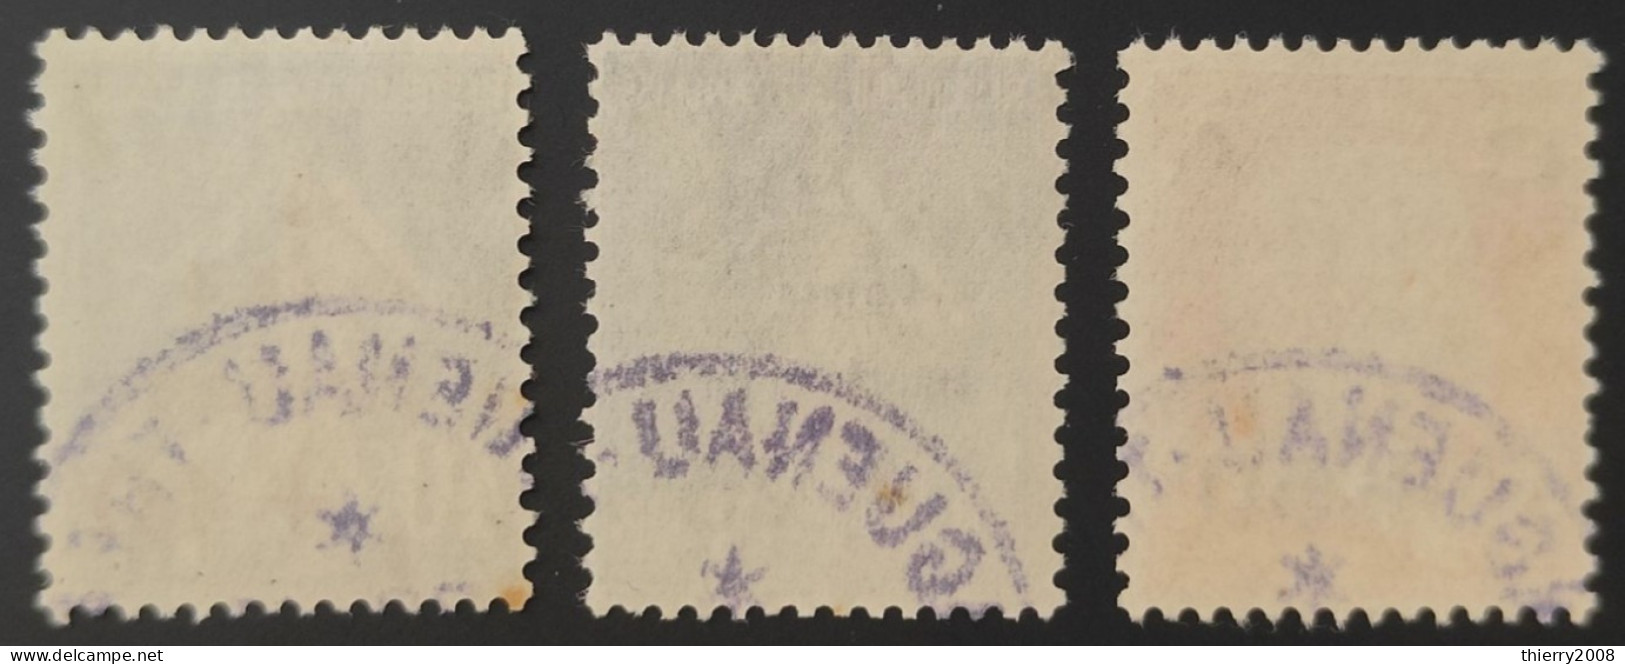 N° 246 à 248  Avec Oblitération Cachet à Date  TB - Used Stamps